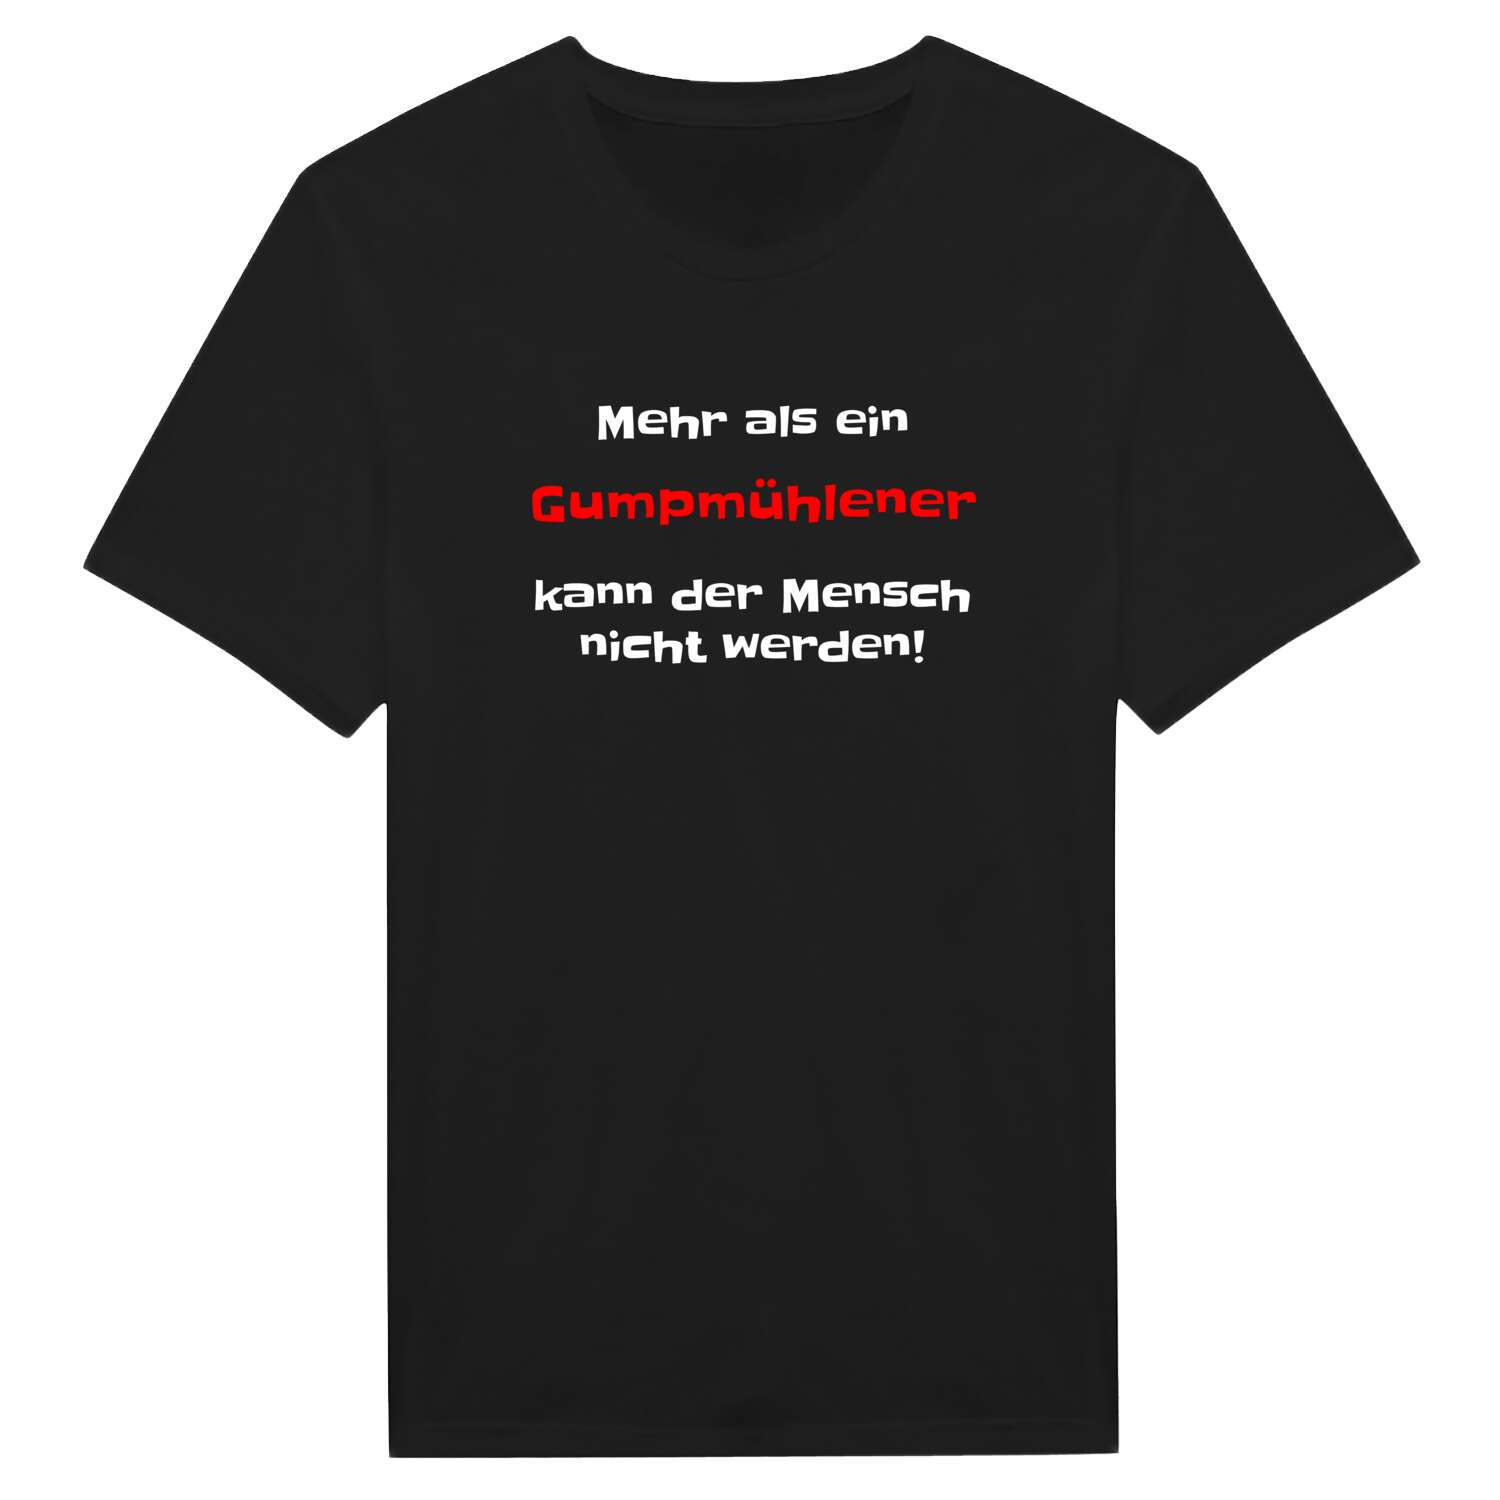 Gumpmühle T-Shirt »Mehr als ein«